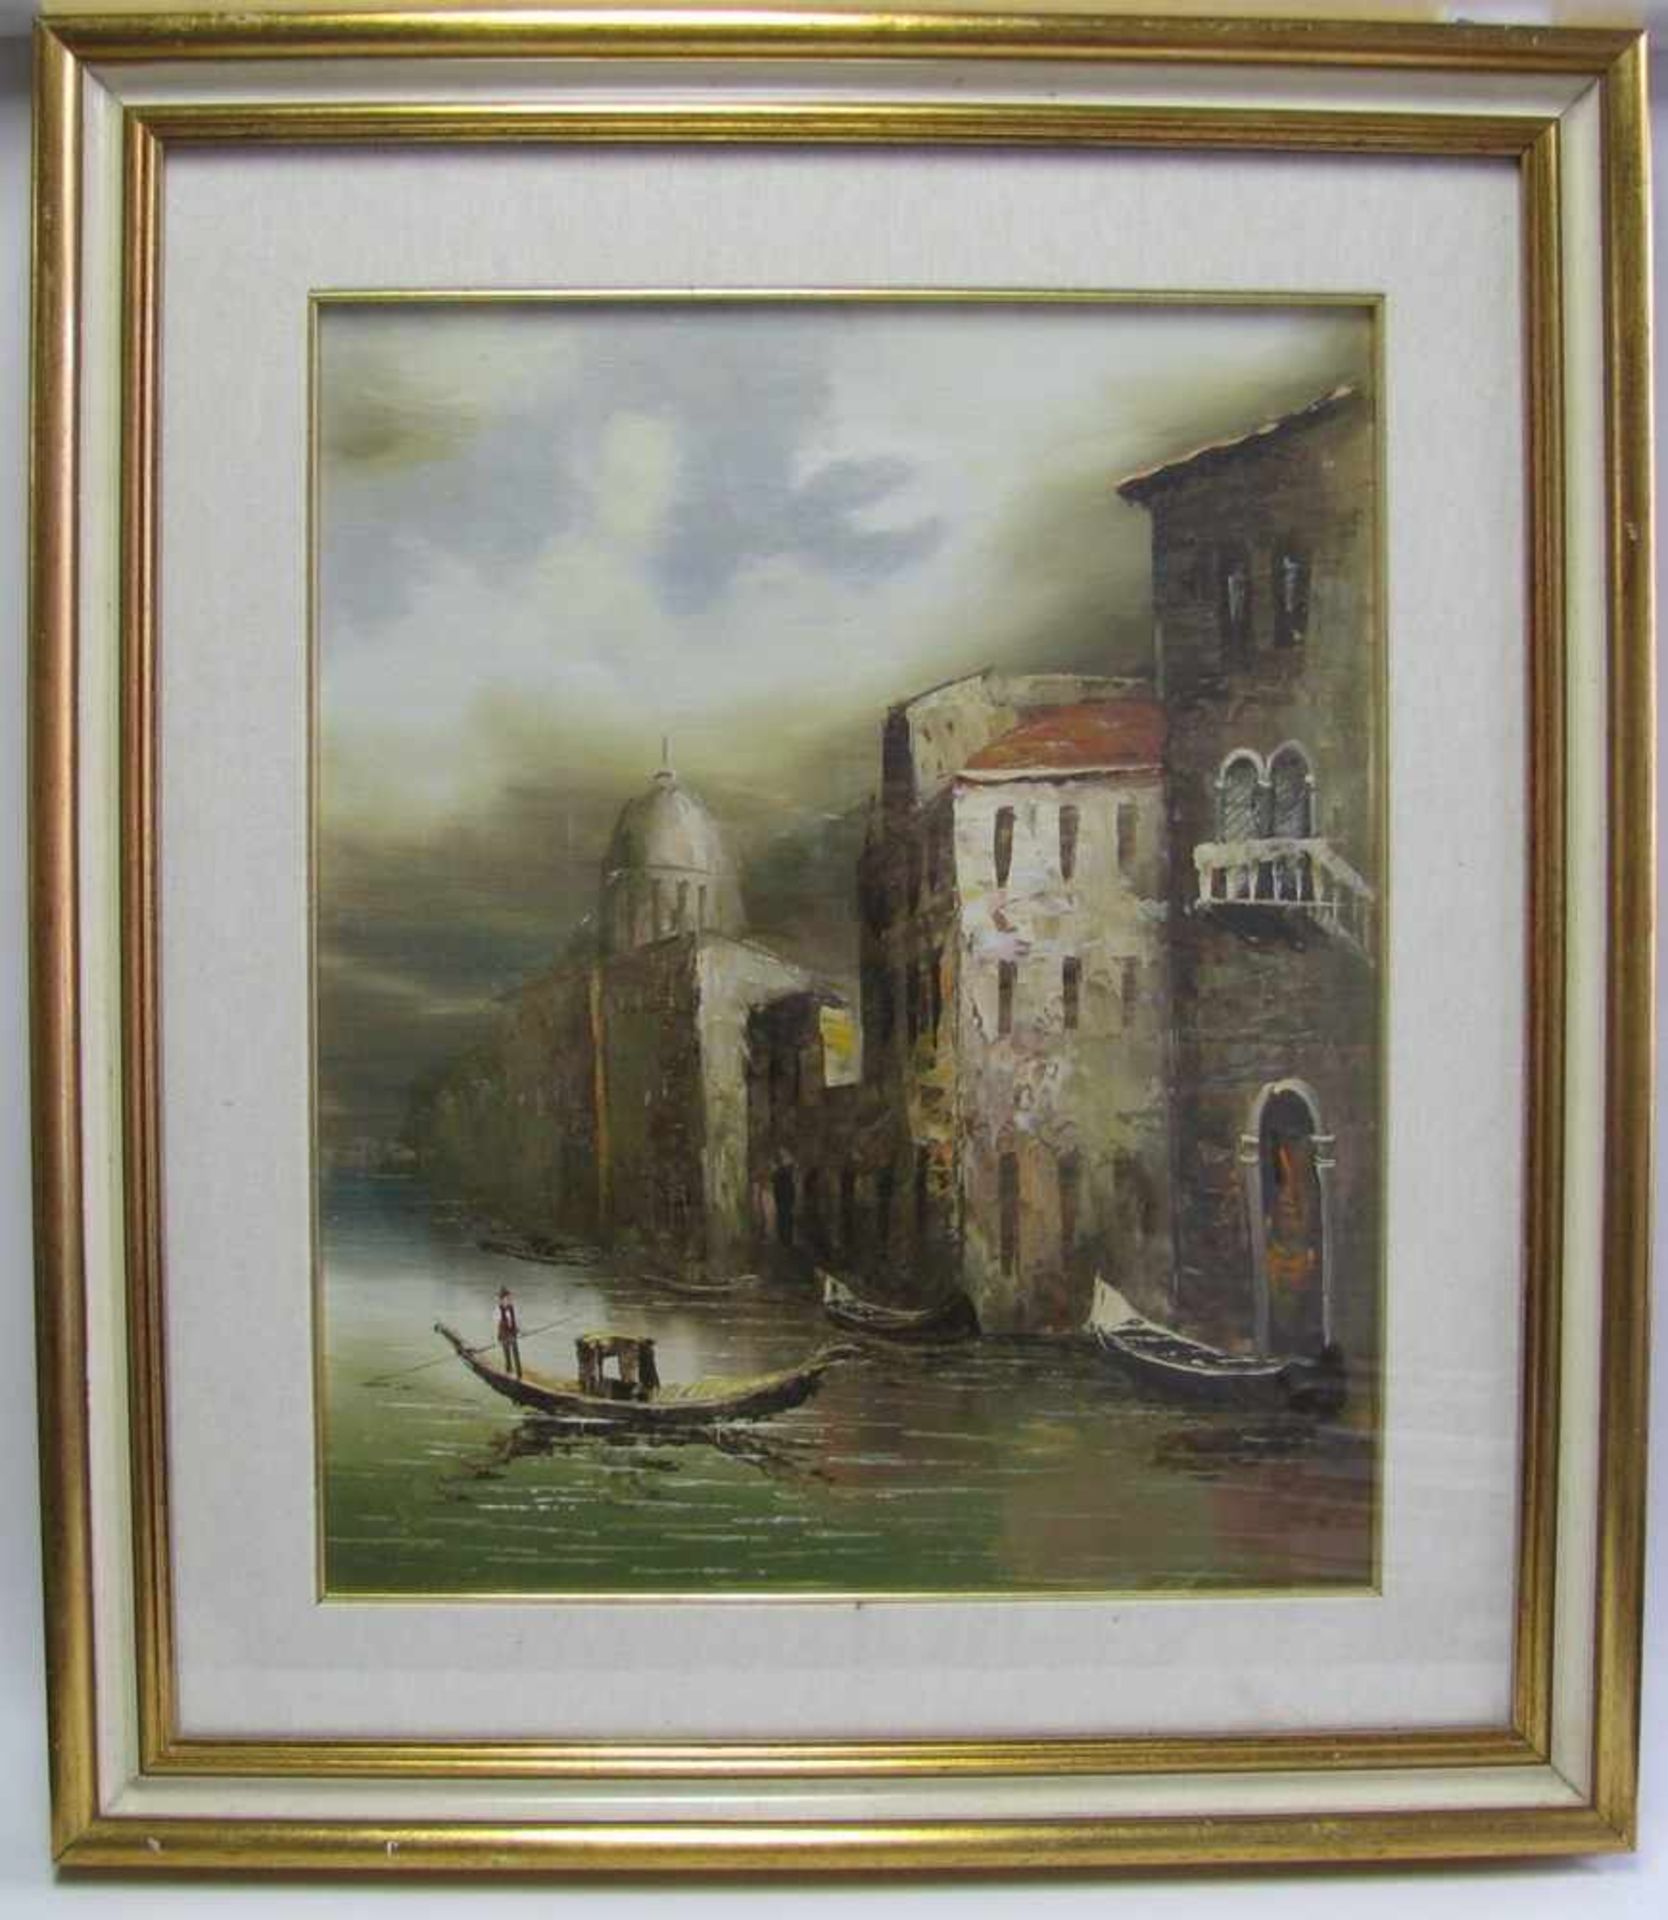 Unbekannt, Italien, 1. Hälfte 20. Jahrhundert, "Venezianische Ansicht", Öl/Leinwand, 54 x 43 cm, R.